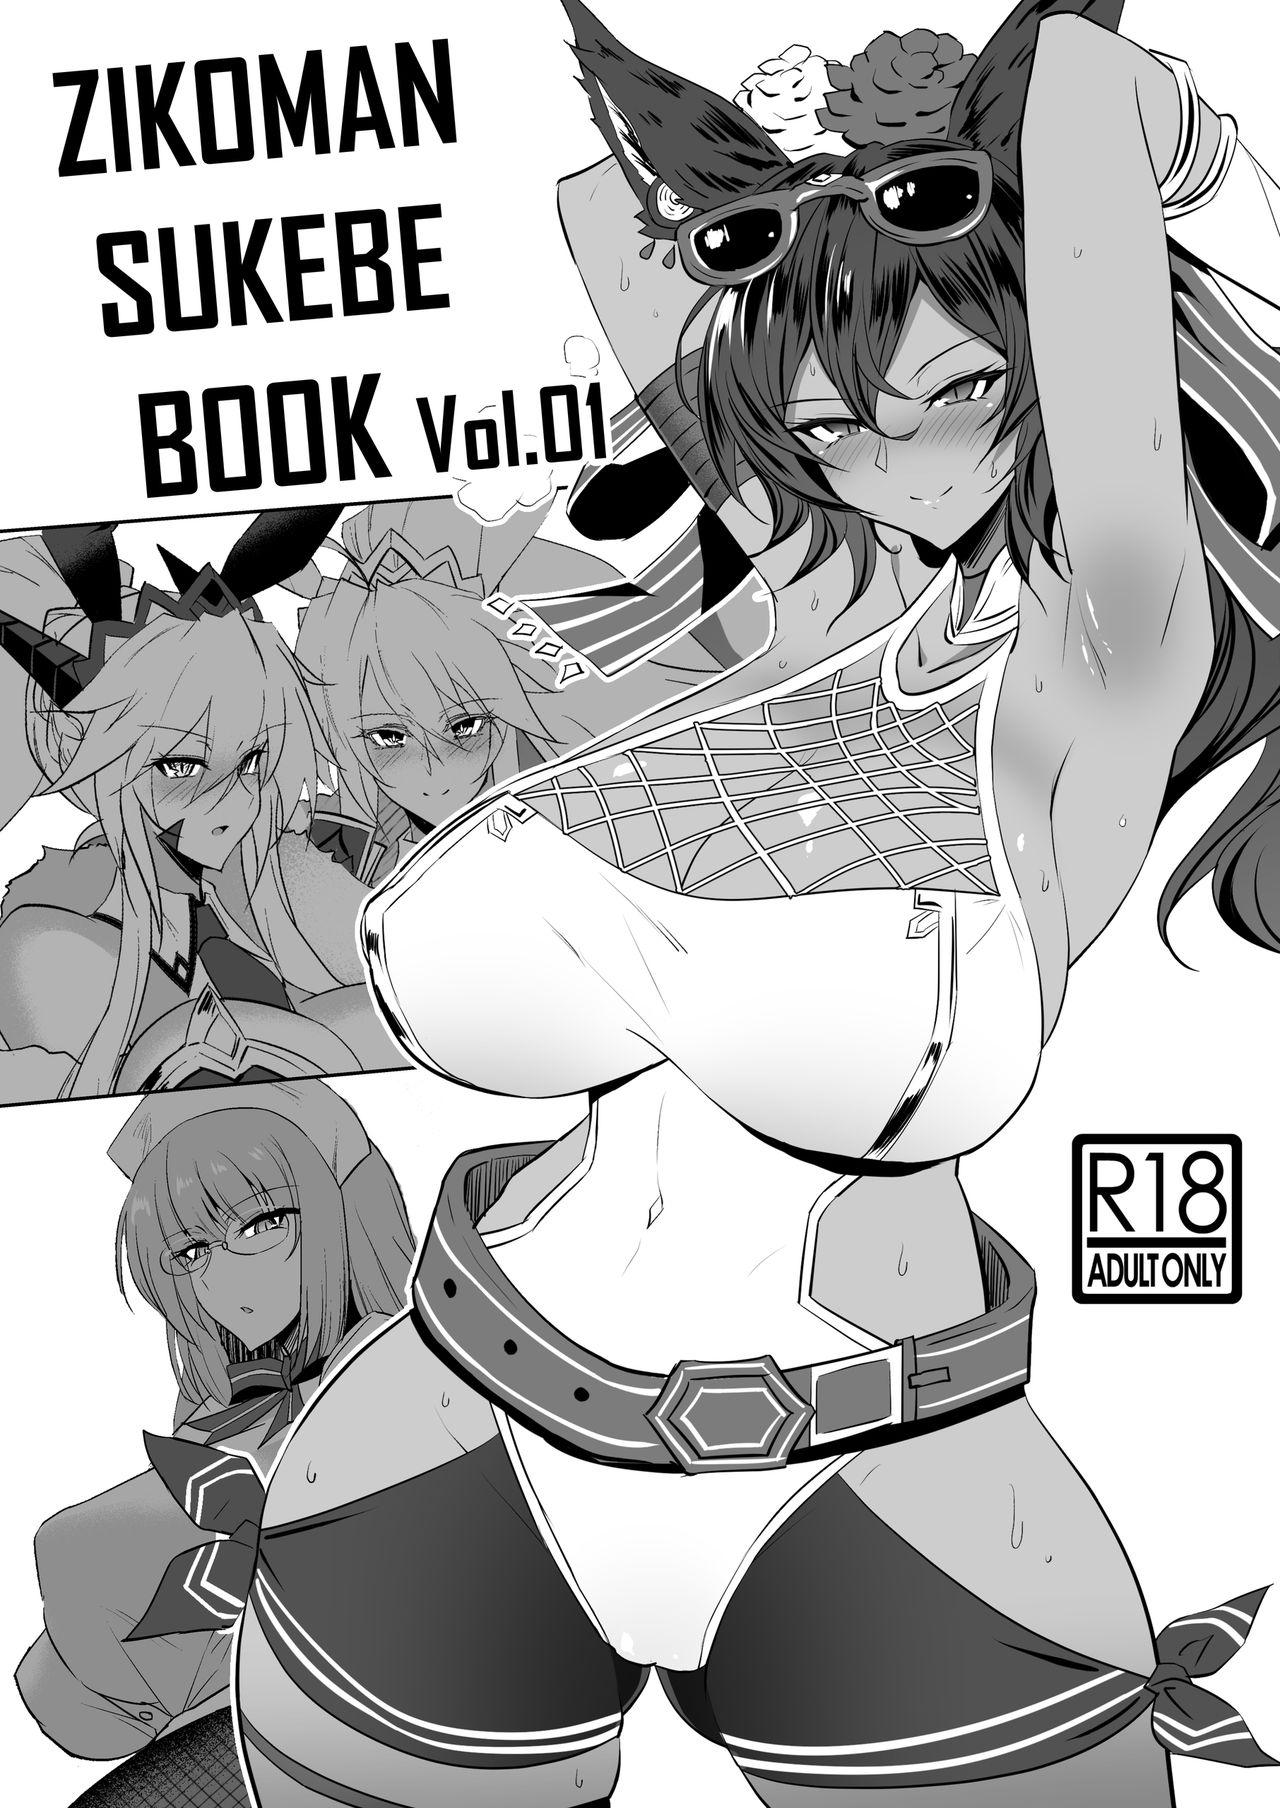 Cheat ZIKOMAN SUKEBE BOOK Vol.01 - Fate grand order Granblue fantasy Public Sex - Picture 1